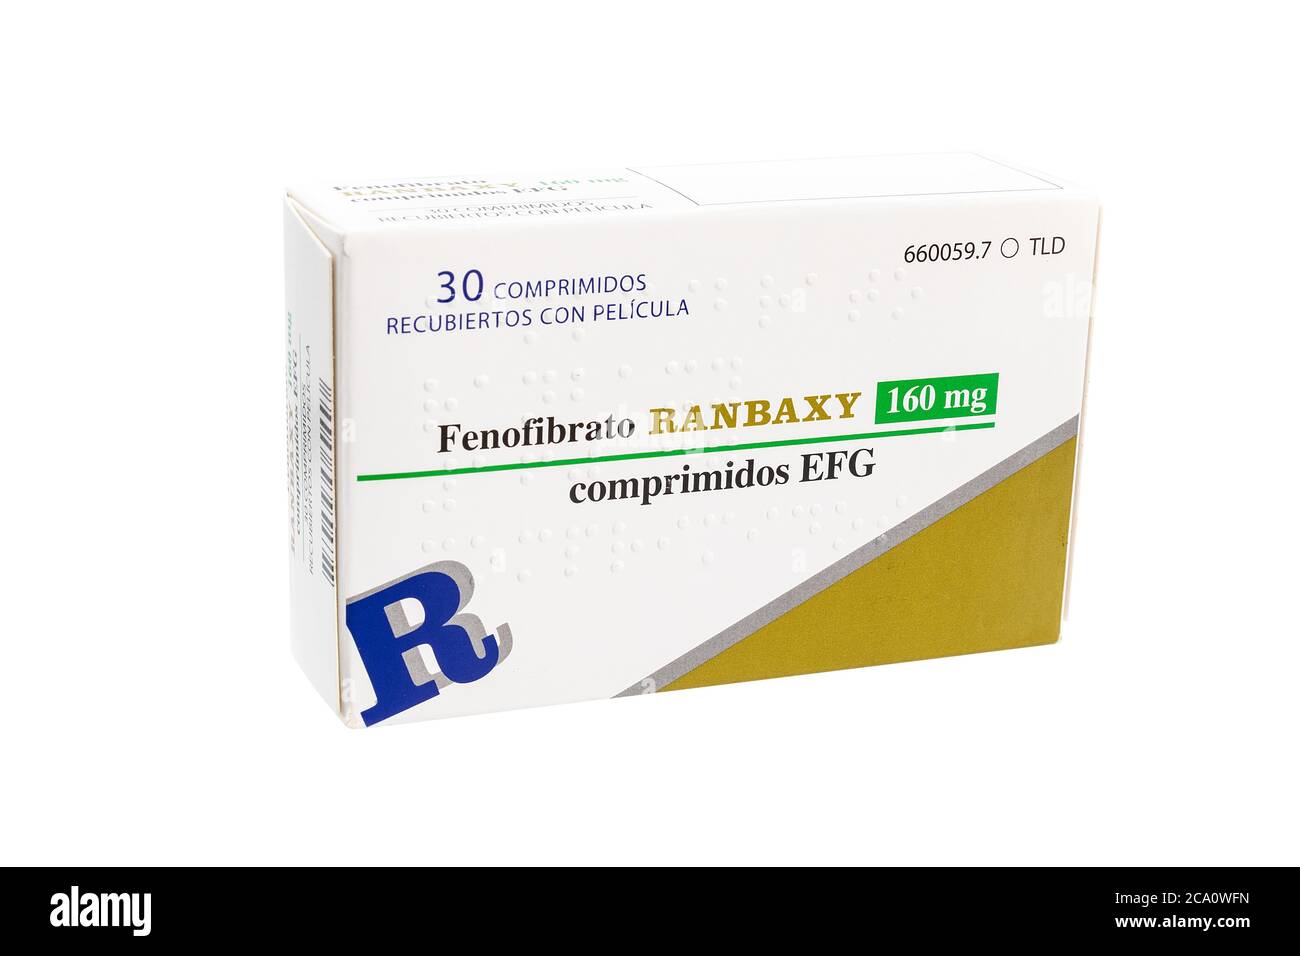 Huelva, Espagne - 23 juillet 2020: Boîte espagnole de la marque Fenofibrate Randaxy, est un médicament de la classe de fibrate utilisé pour traiter le taux anormal de lipides sanguins Banque D'Images